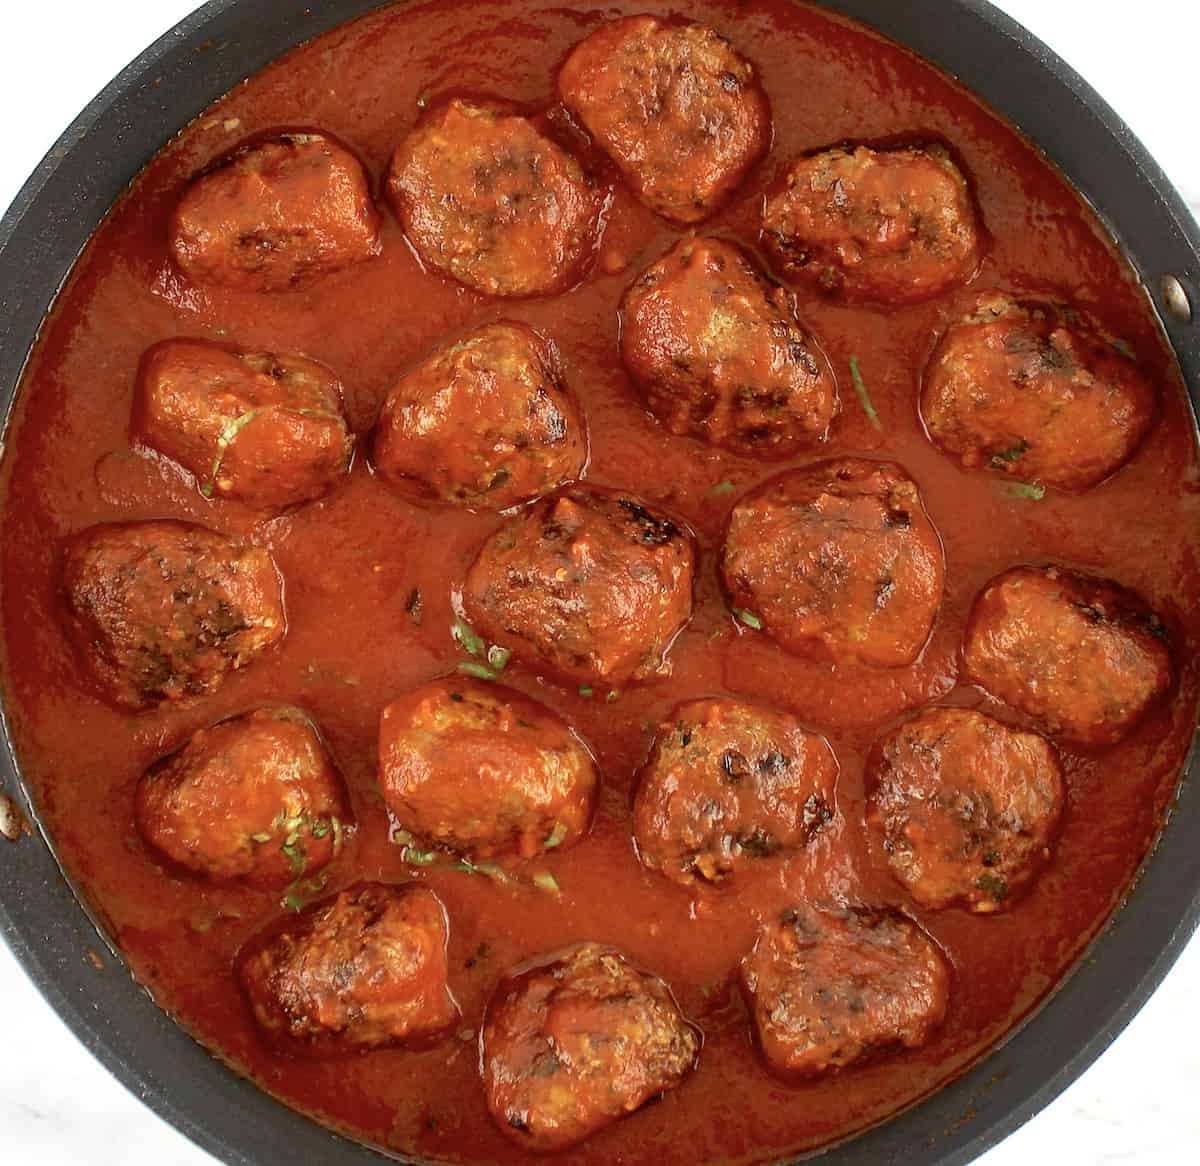 Keto Italian Meatballs in tomato sauce in skillet